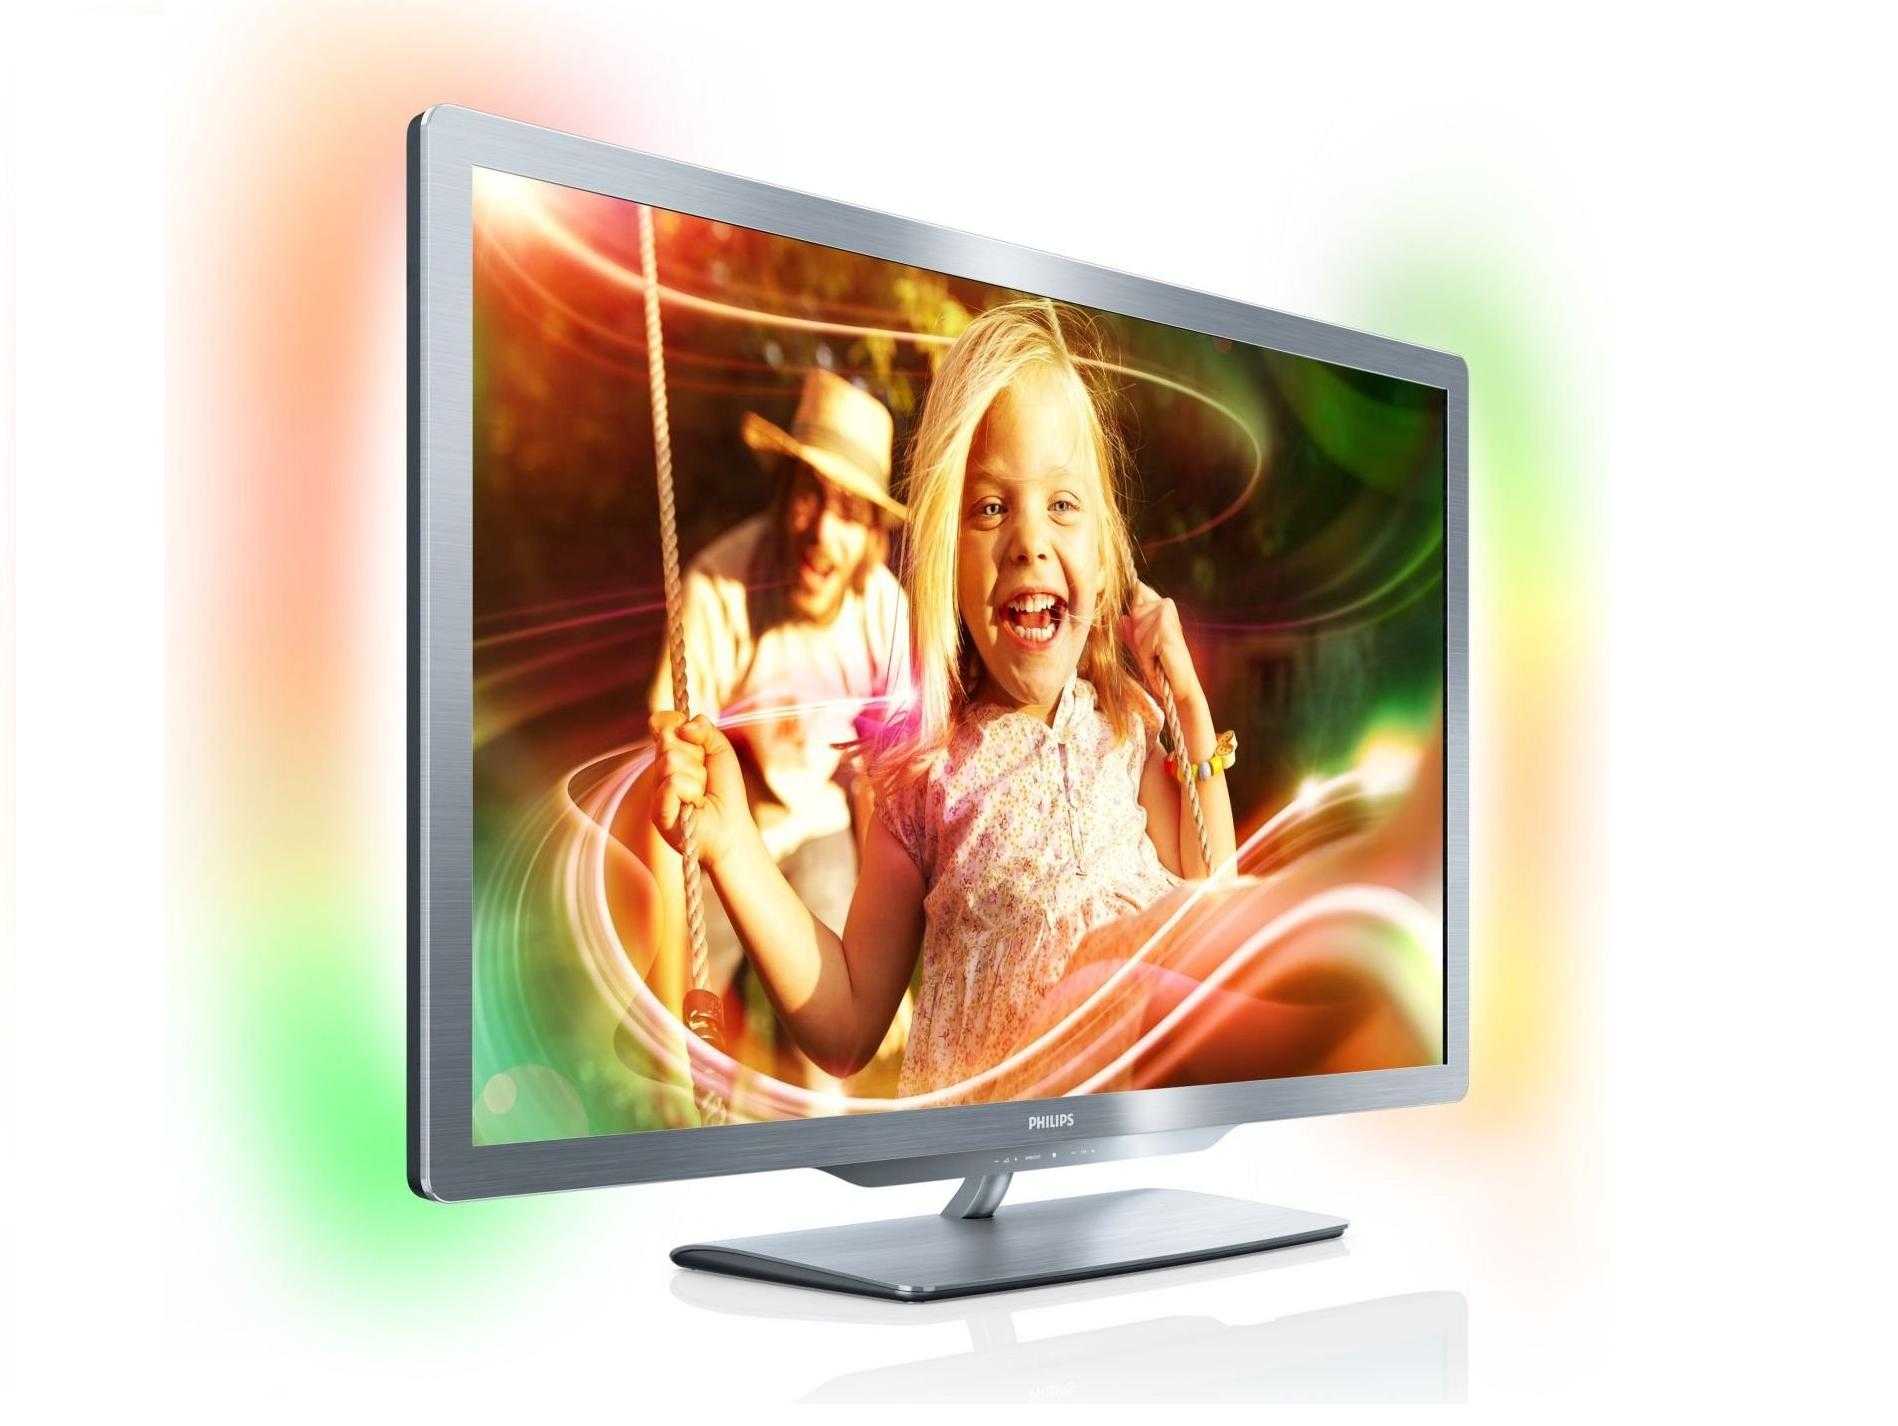 Телевизор Philips 42PFL3207H - подробные характеристики обзоры видео фото Цены в интернет-магазинах где можно купить телевизор Philips 42PFL3207H